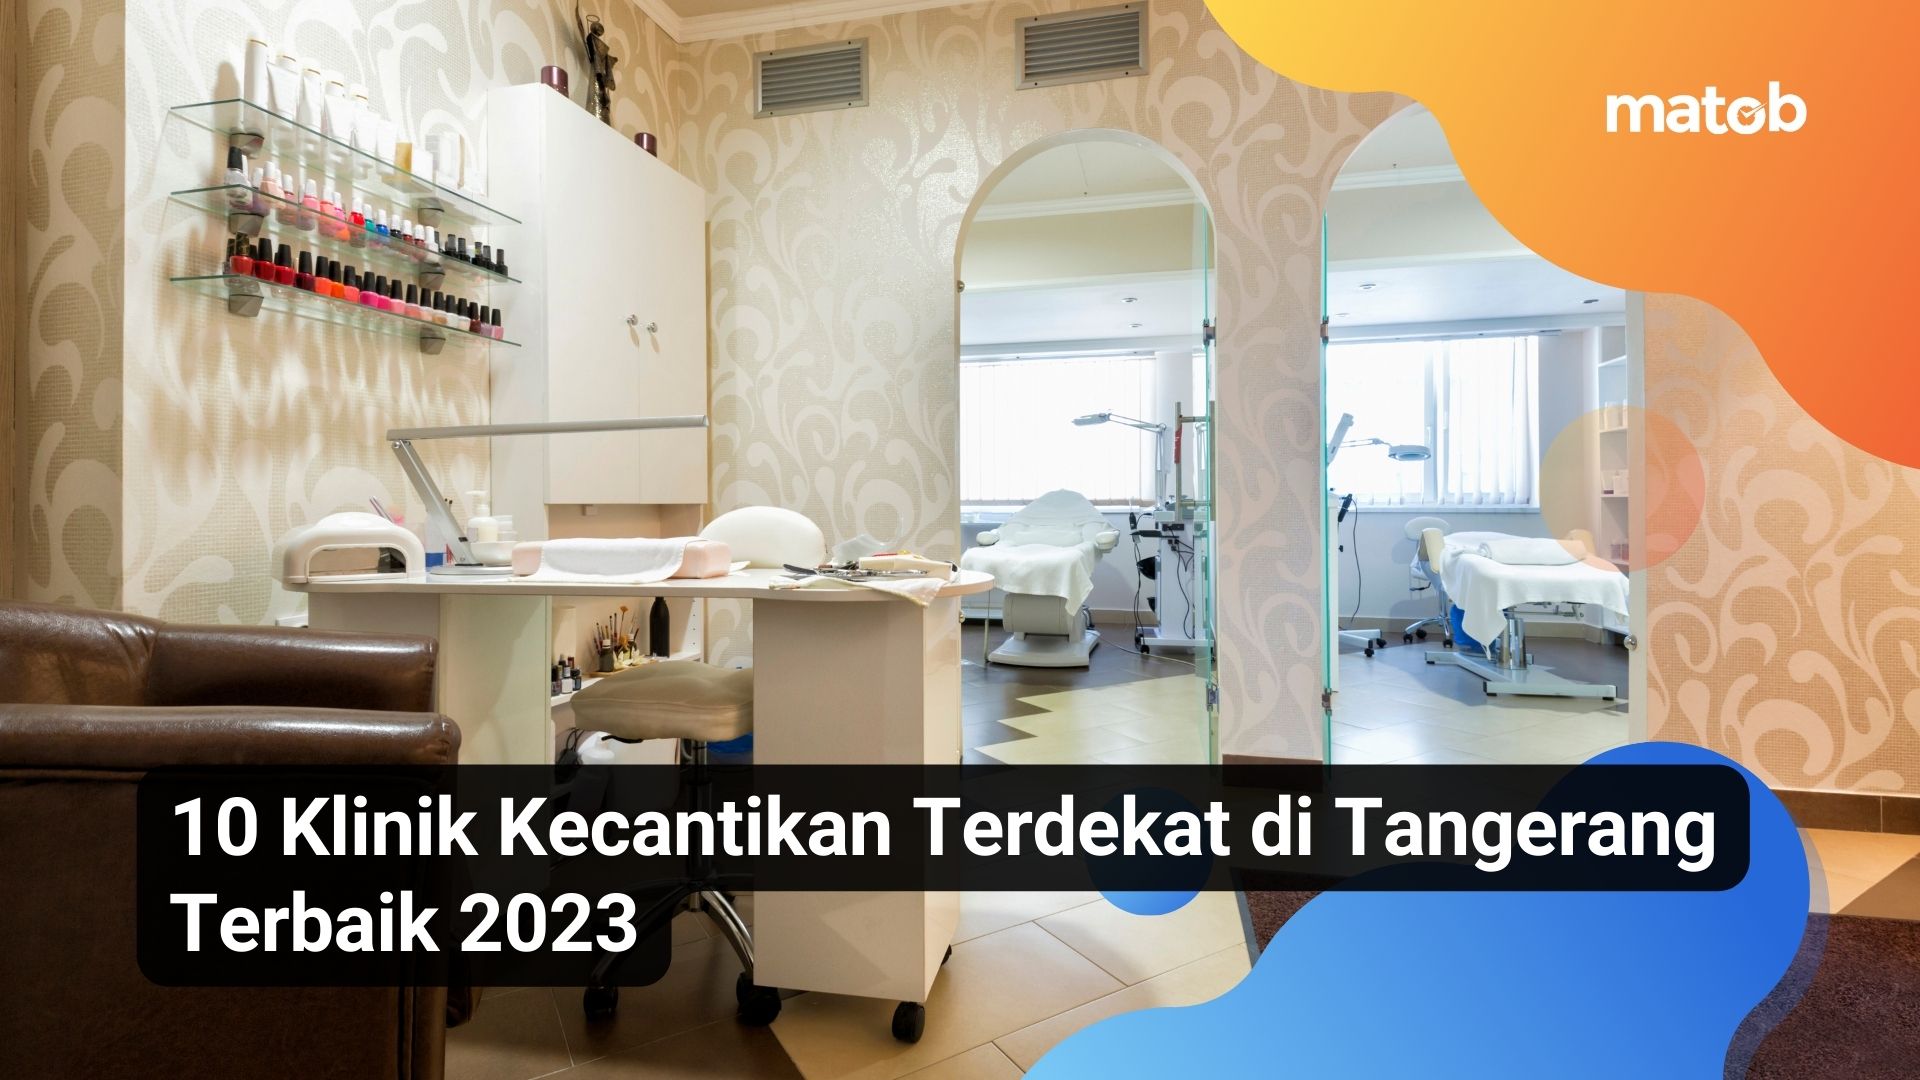 10 Klinik Kecantikan Terdekat di Tangerang Terbaik 2023 Matob Bisnis